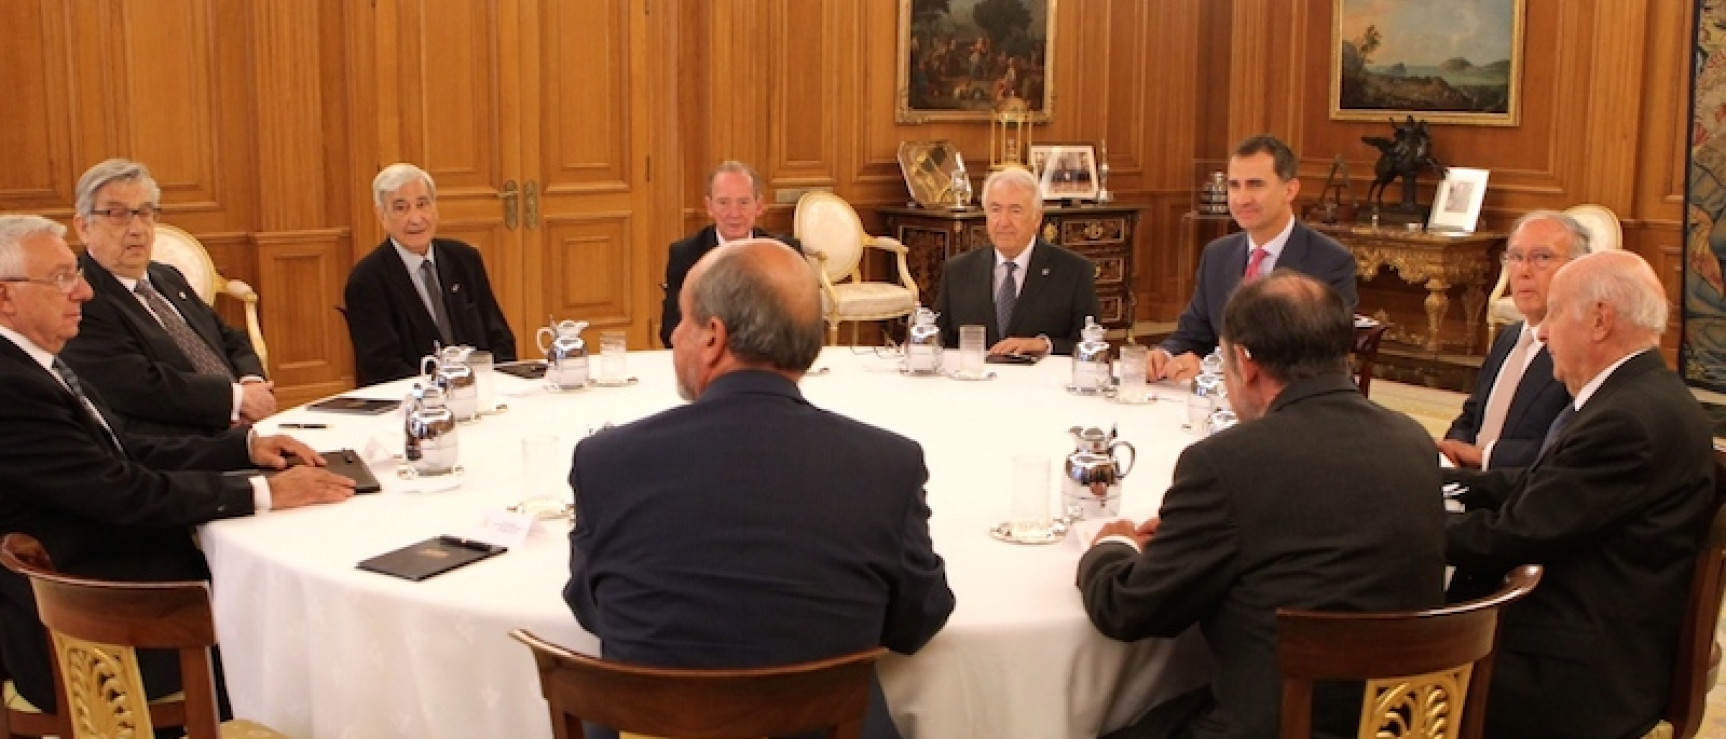 Los representantes de las Reales Academias, reunidos con Felipe VI.  © Casa de Su Majestad el Rey / Borja Fotógrafos